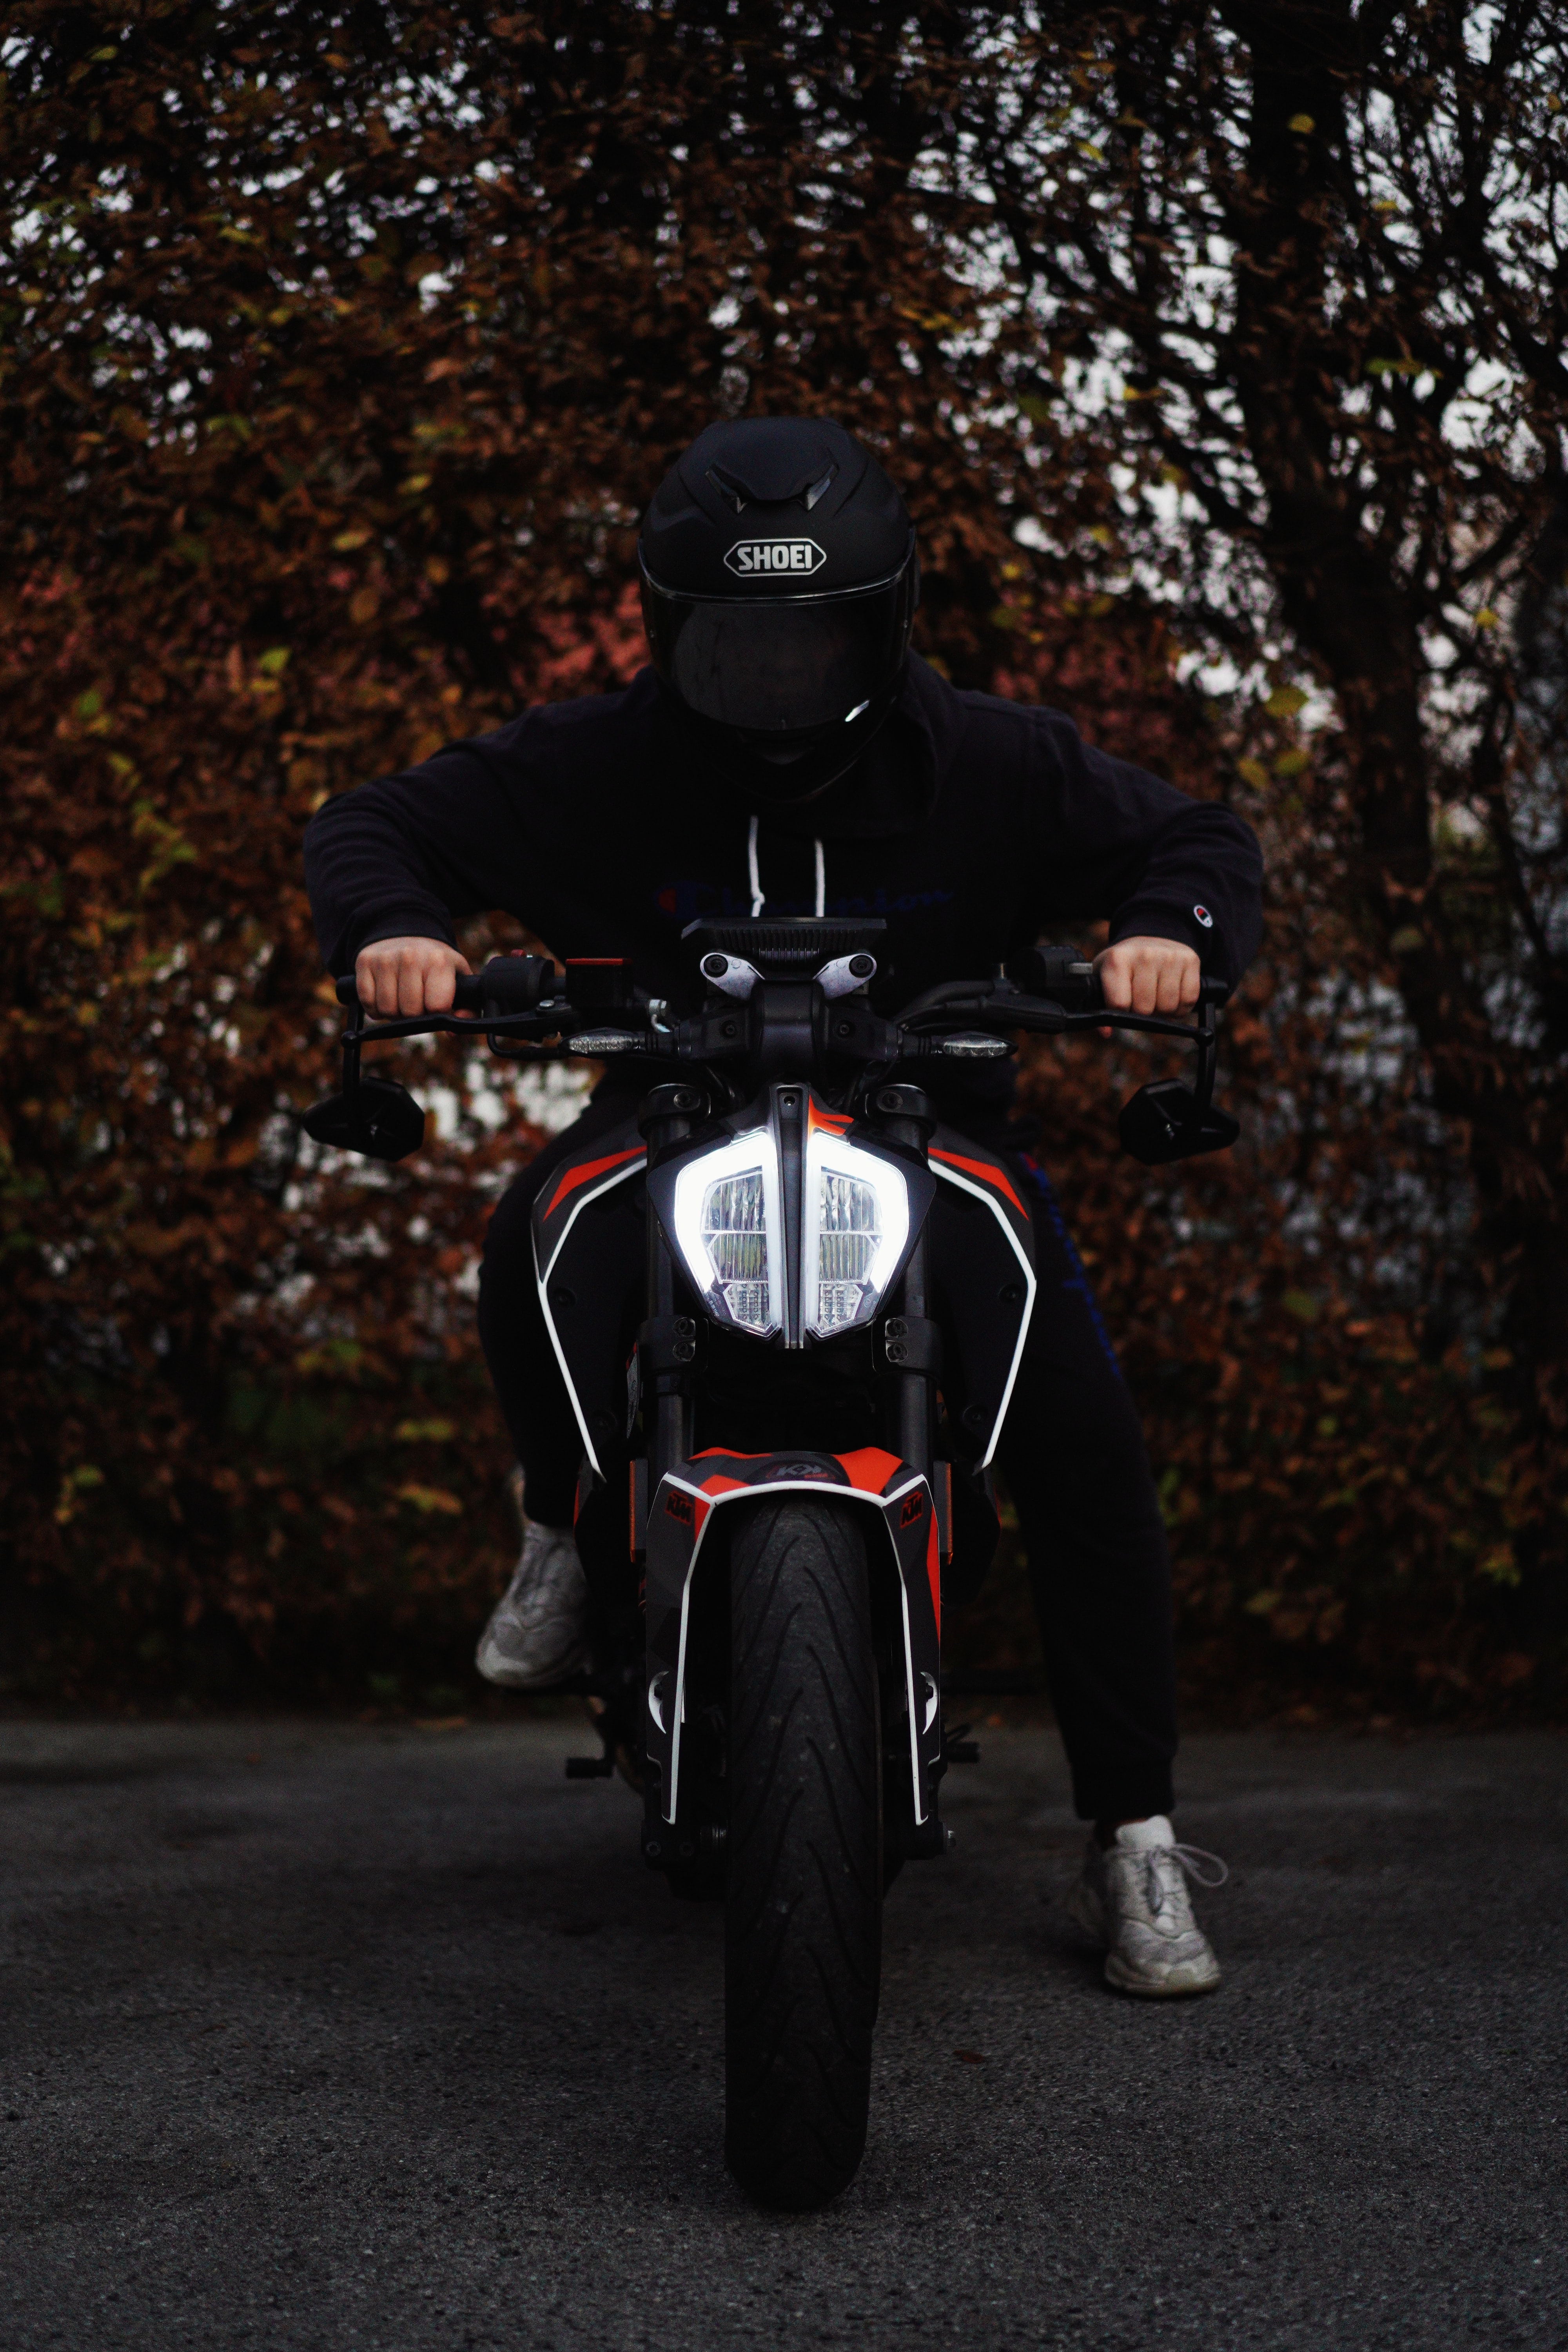 bike, motorcycles, black, motorcyclist, helmet, motorcycle